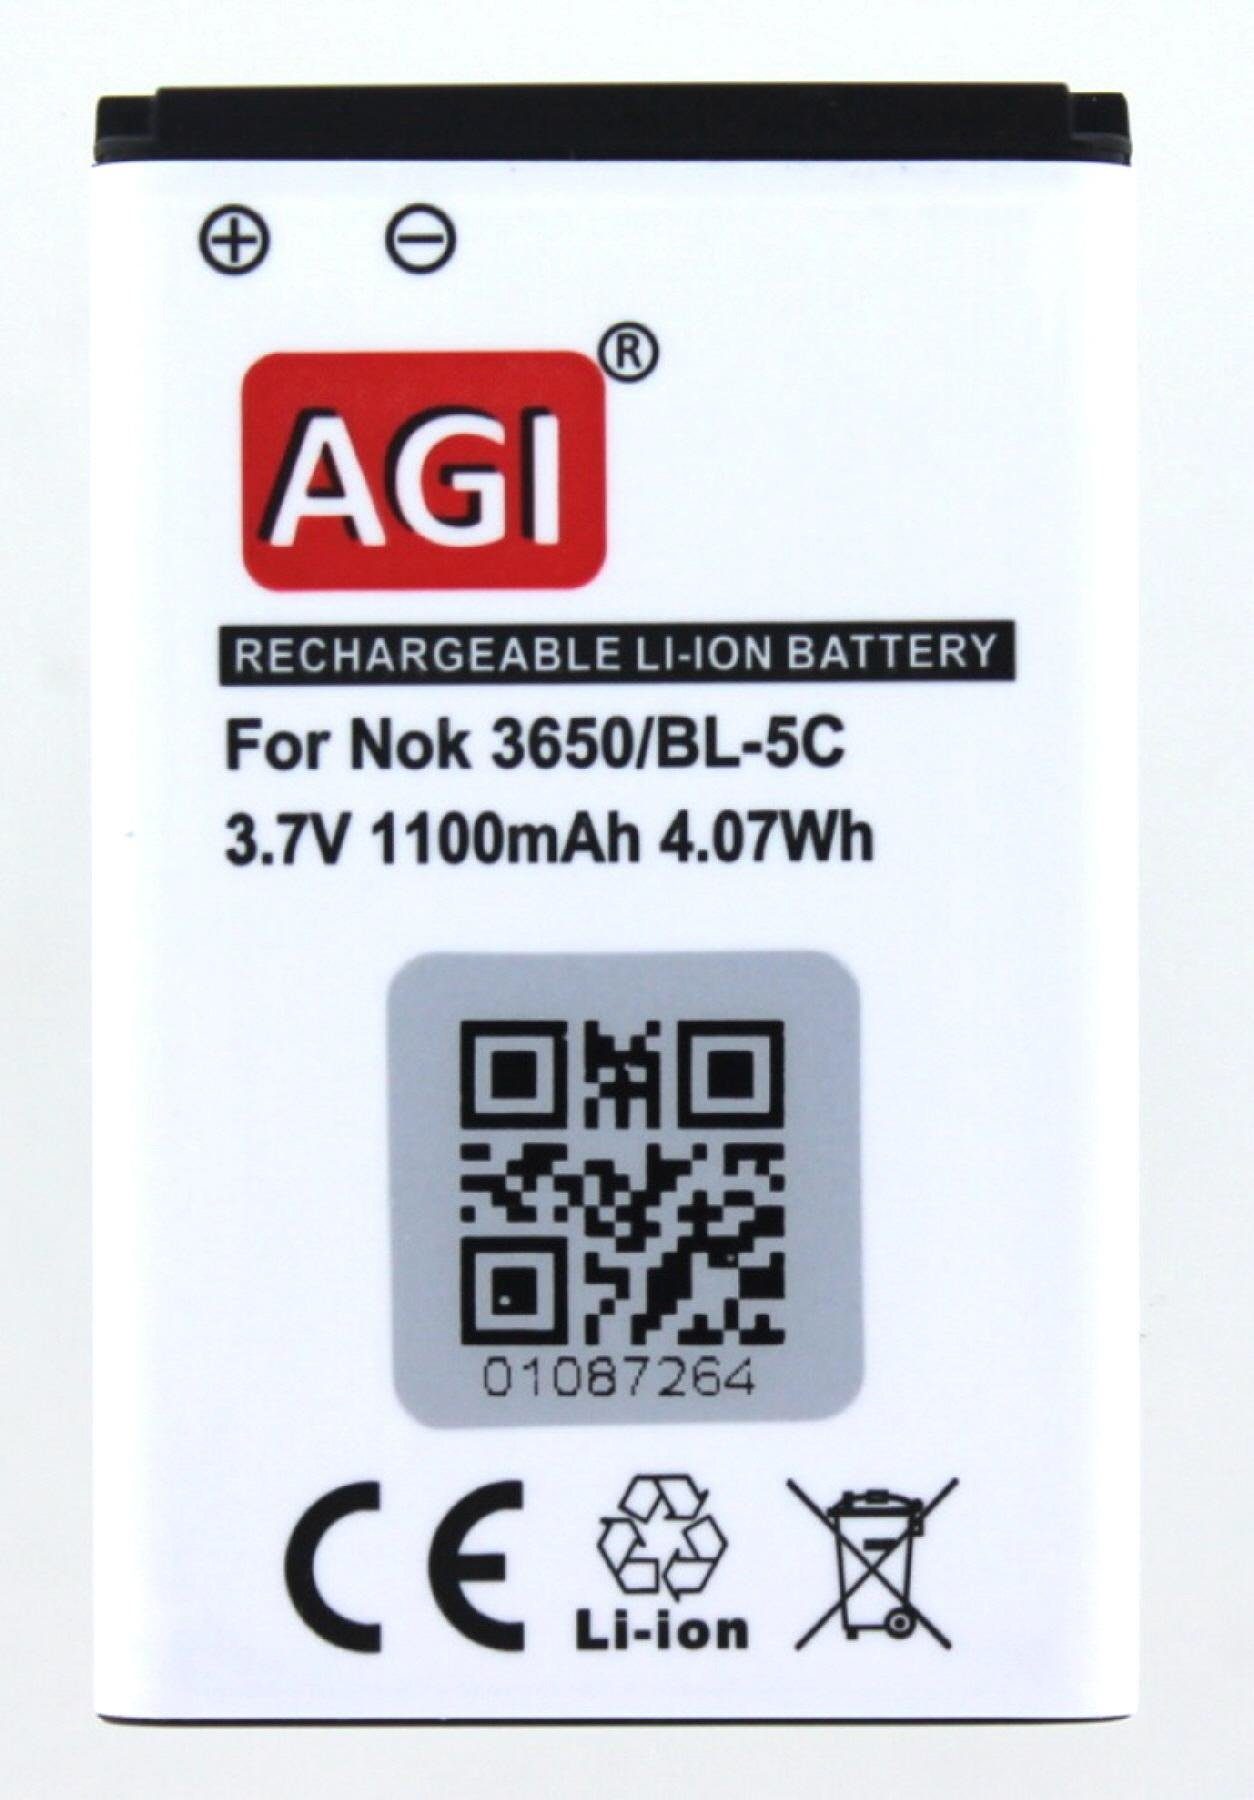 Akku mit AGI Nokia 2323 Akku Akku kompatibel Classic